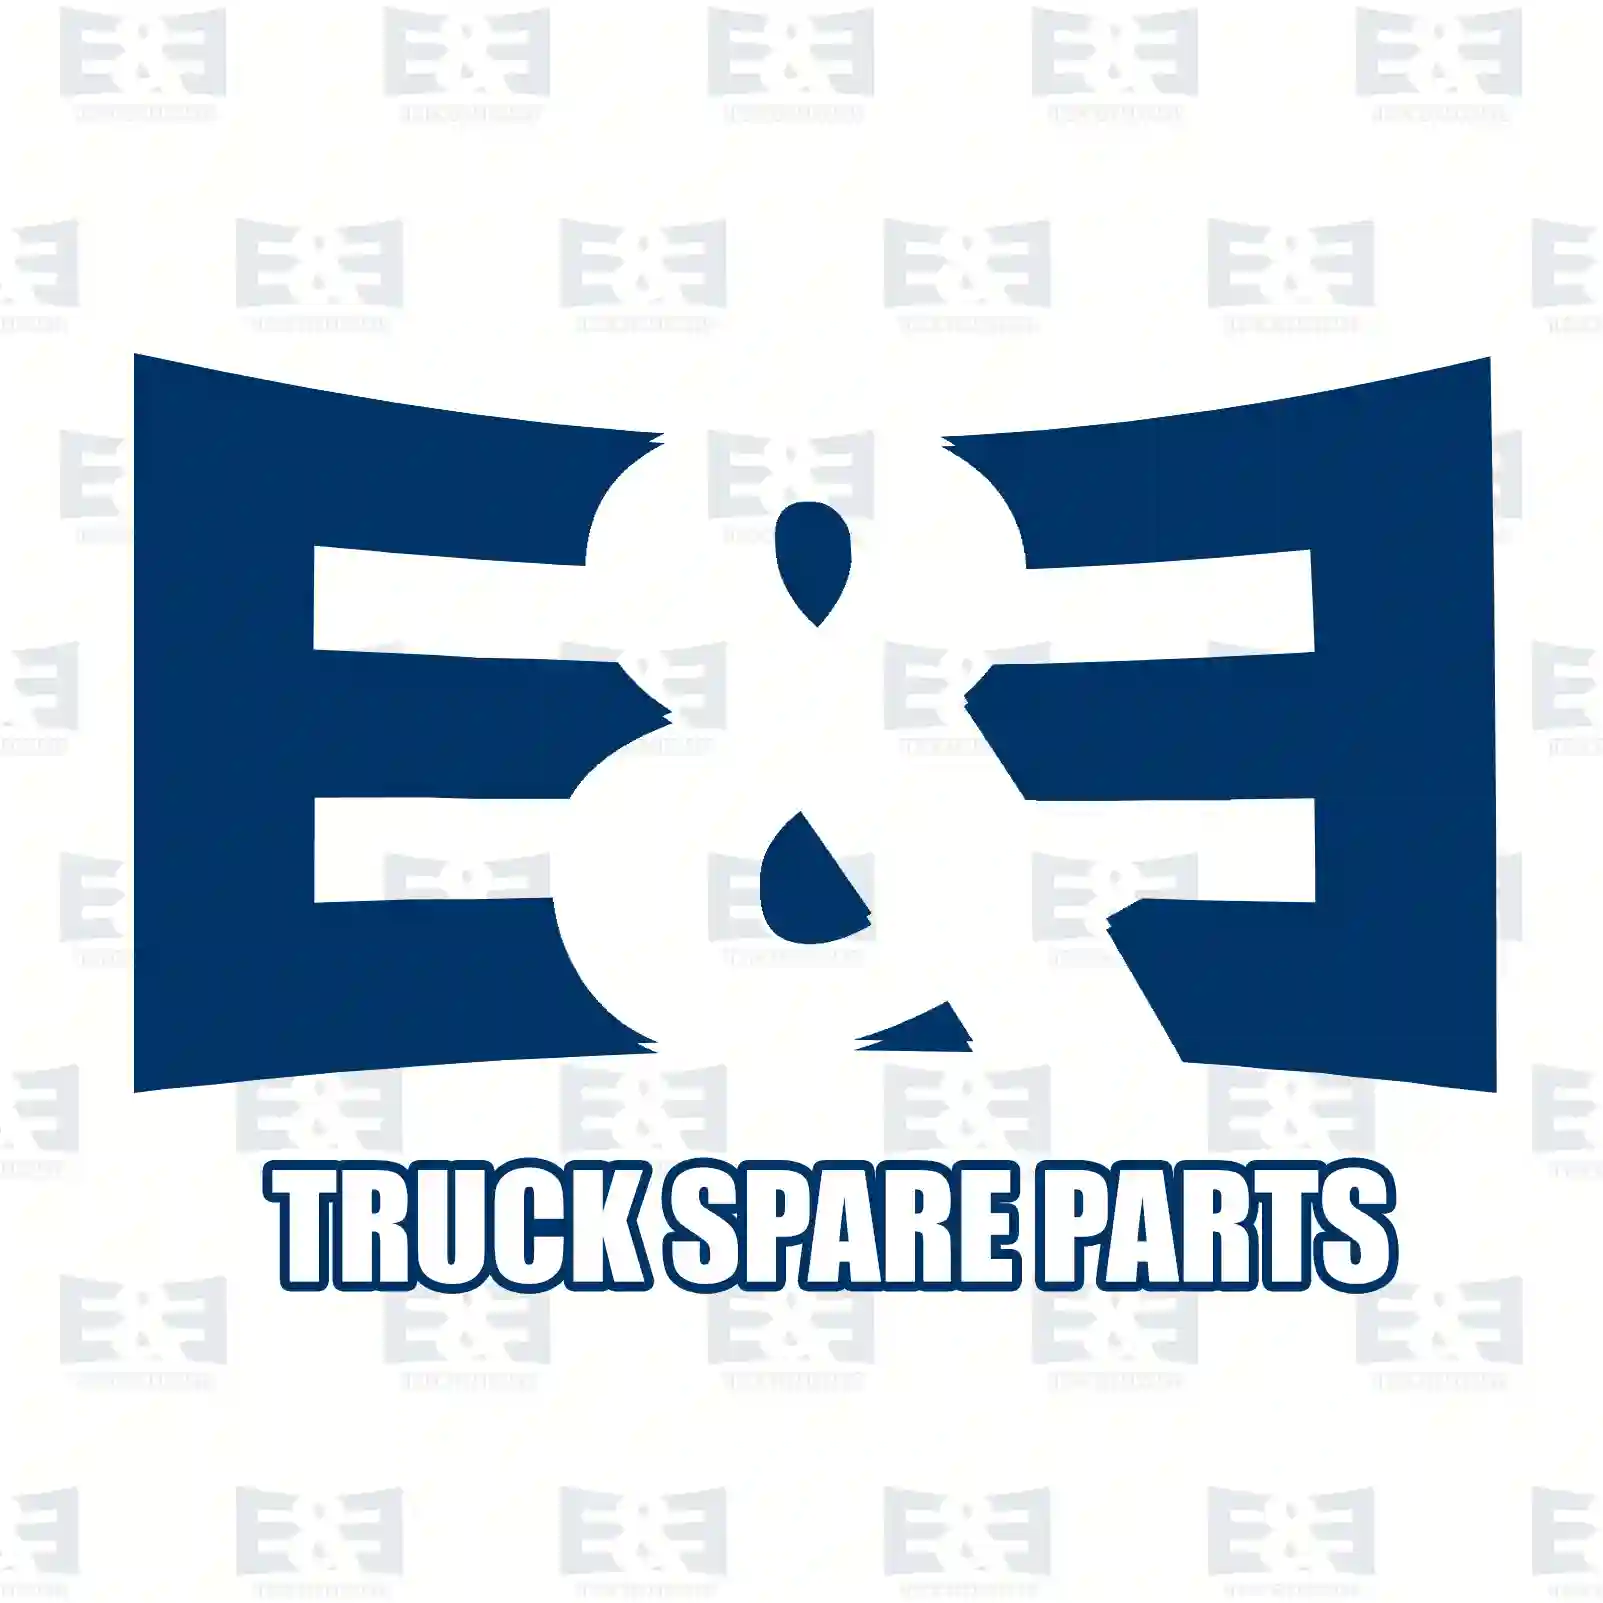 Switch, exhaust brake, 2E2203920, 81255050992 ||  2E2203920 E&E Truck Spare Parts | Truck Spare Parts, Auotomotive Spare Parts Switch, exhaust brake, 2E2203920, 81255050992 ||  2E2203920 E&E Truck Spare Parts | Truck Spare Parts, Auotomotive Spare Parts